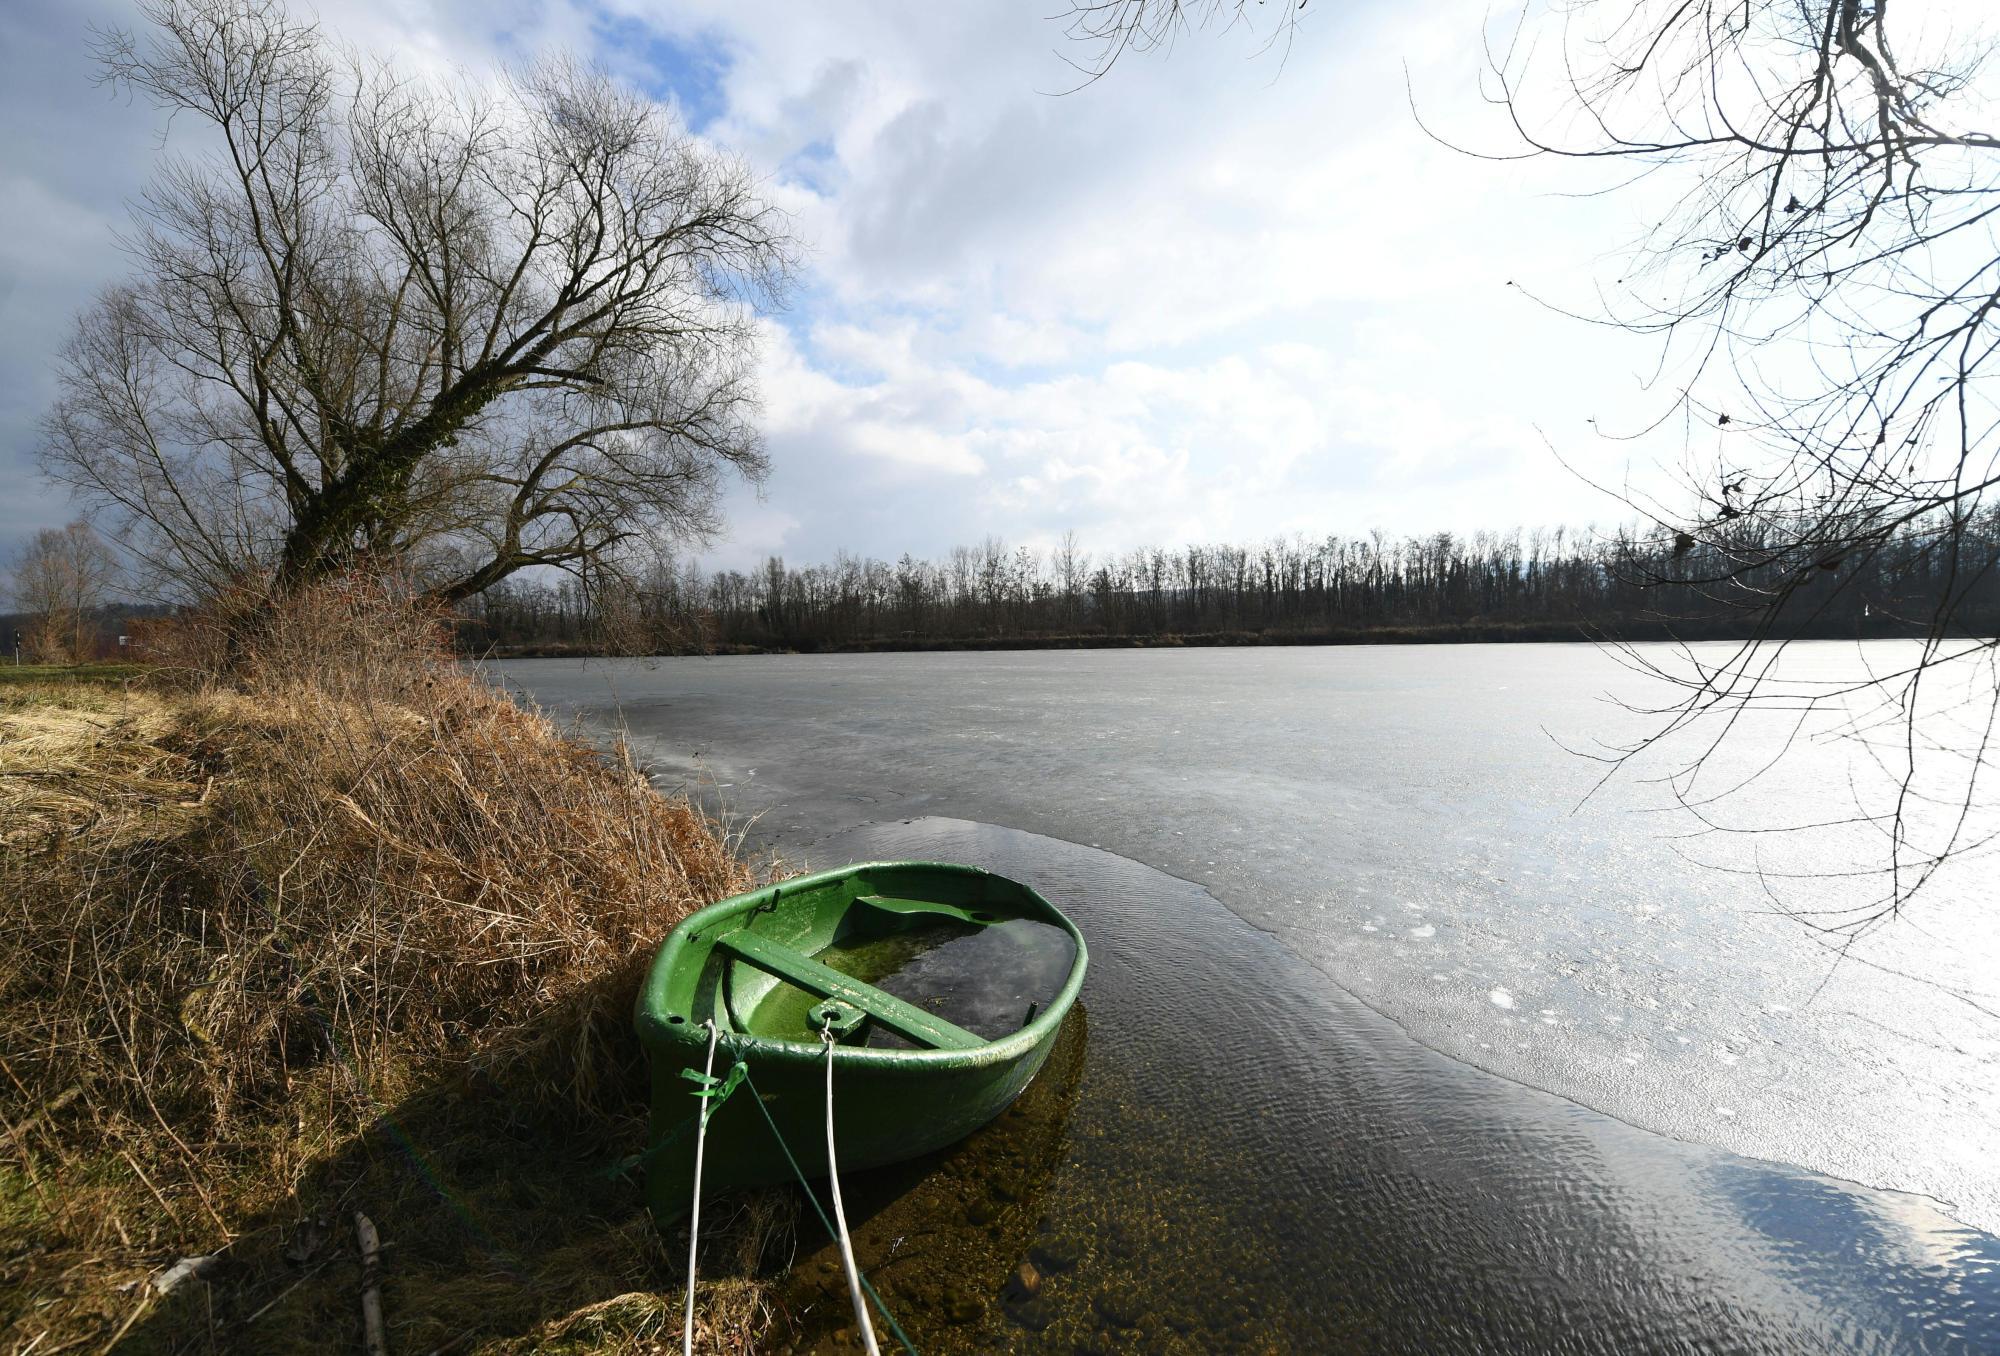 Vor dem Ertrinken gerettet: 47-Jähriger sprang in die Donau, um Frau zu helfen